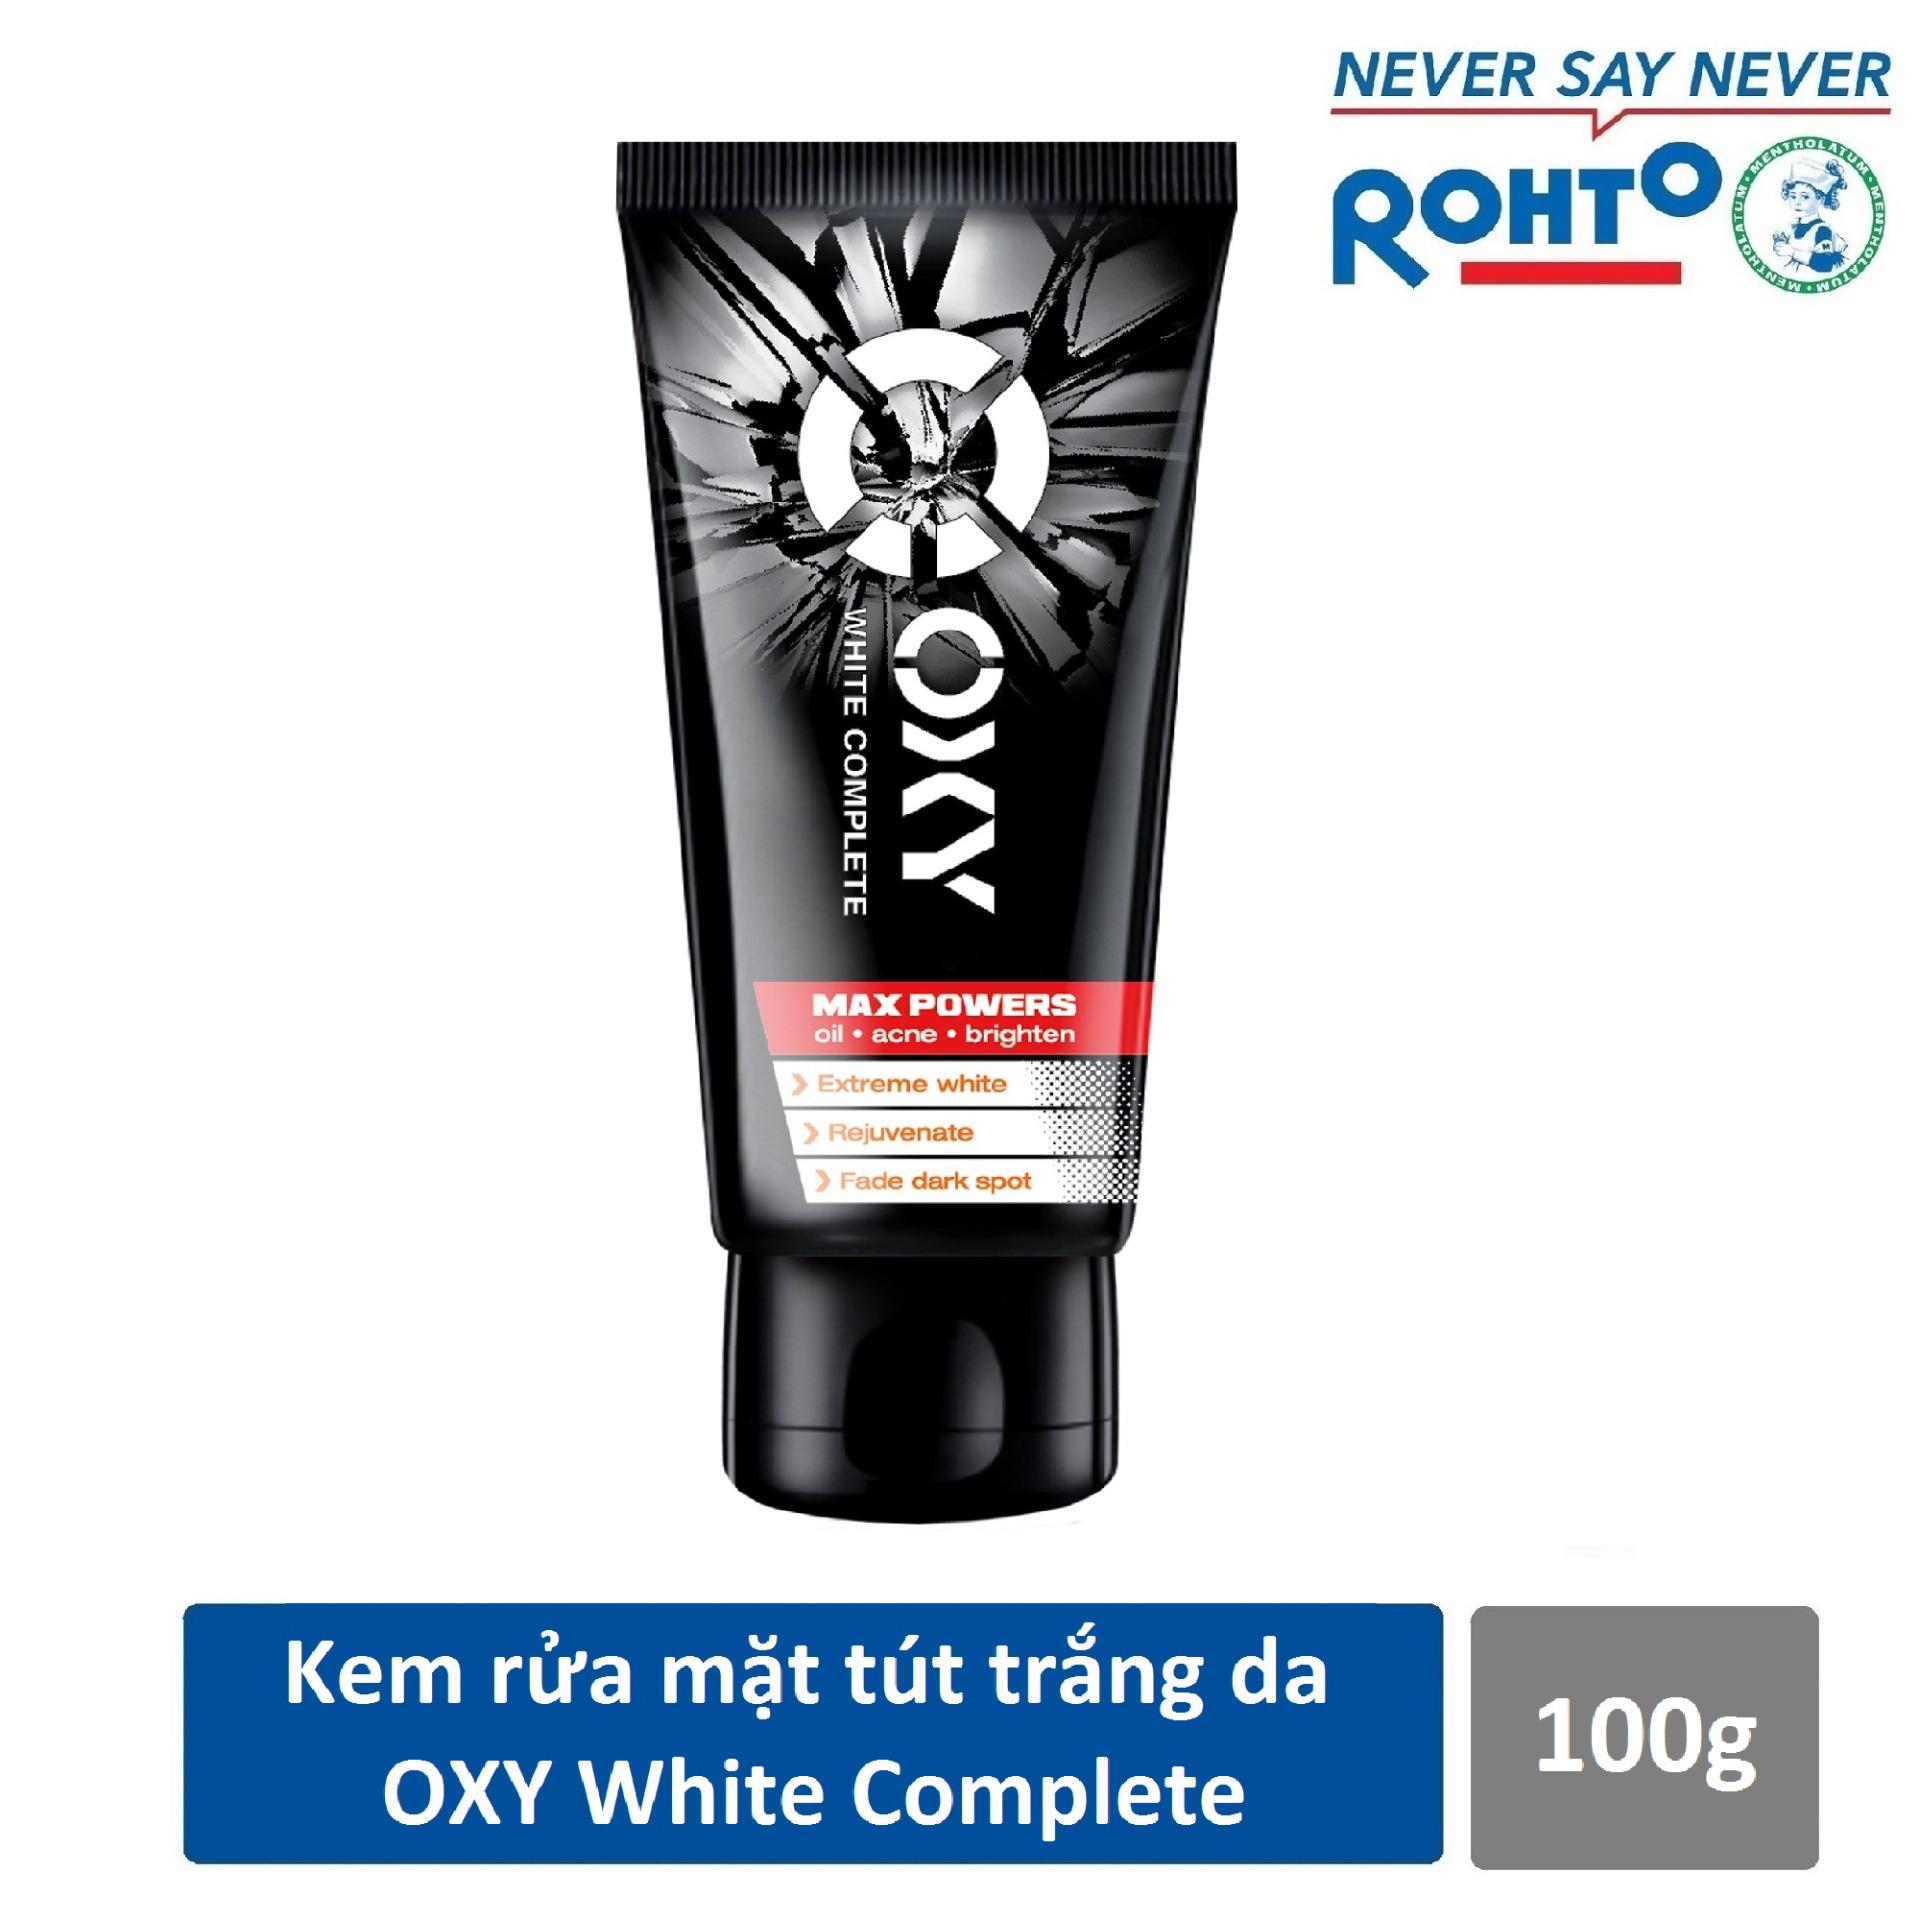 Kem rửa mặt tút da trắng khỏe cho nam Oxy White Complete 100g - CƠ HỘI TRÚNG IPHONE X